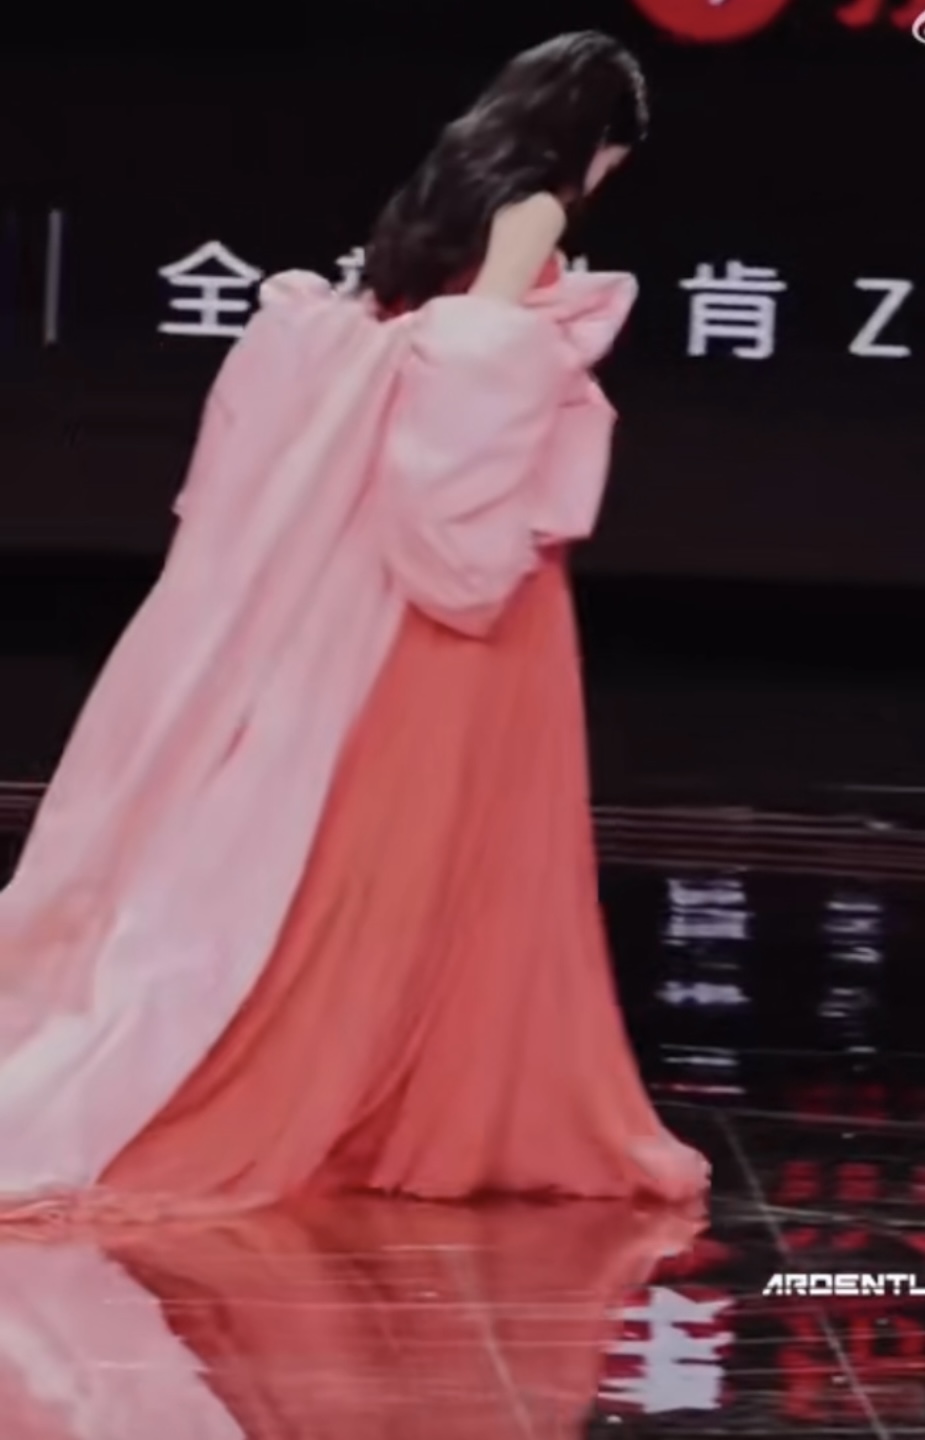 迪丽热巴出席微博之夜穿粉色拖地长裙优雅迷人 长发披肩楚楚动人